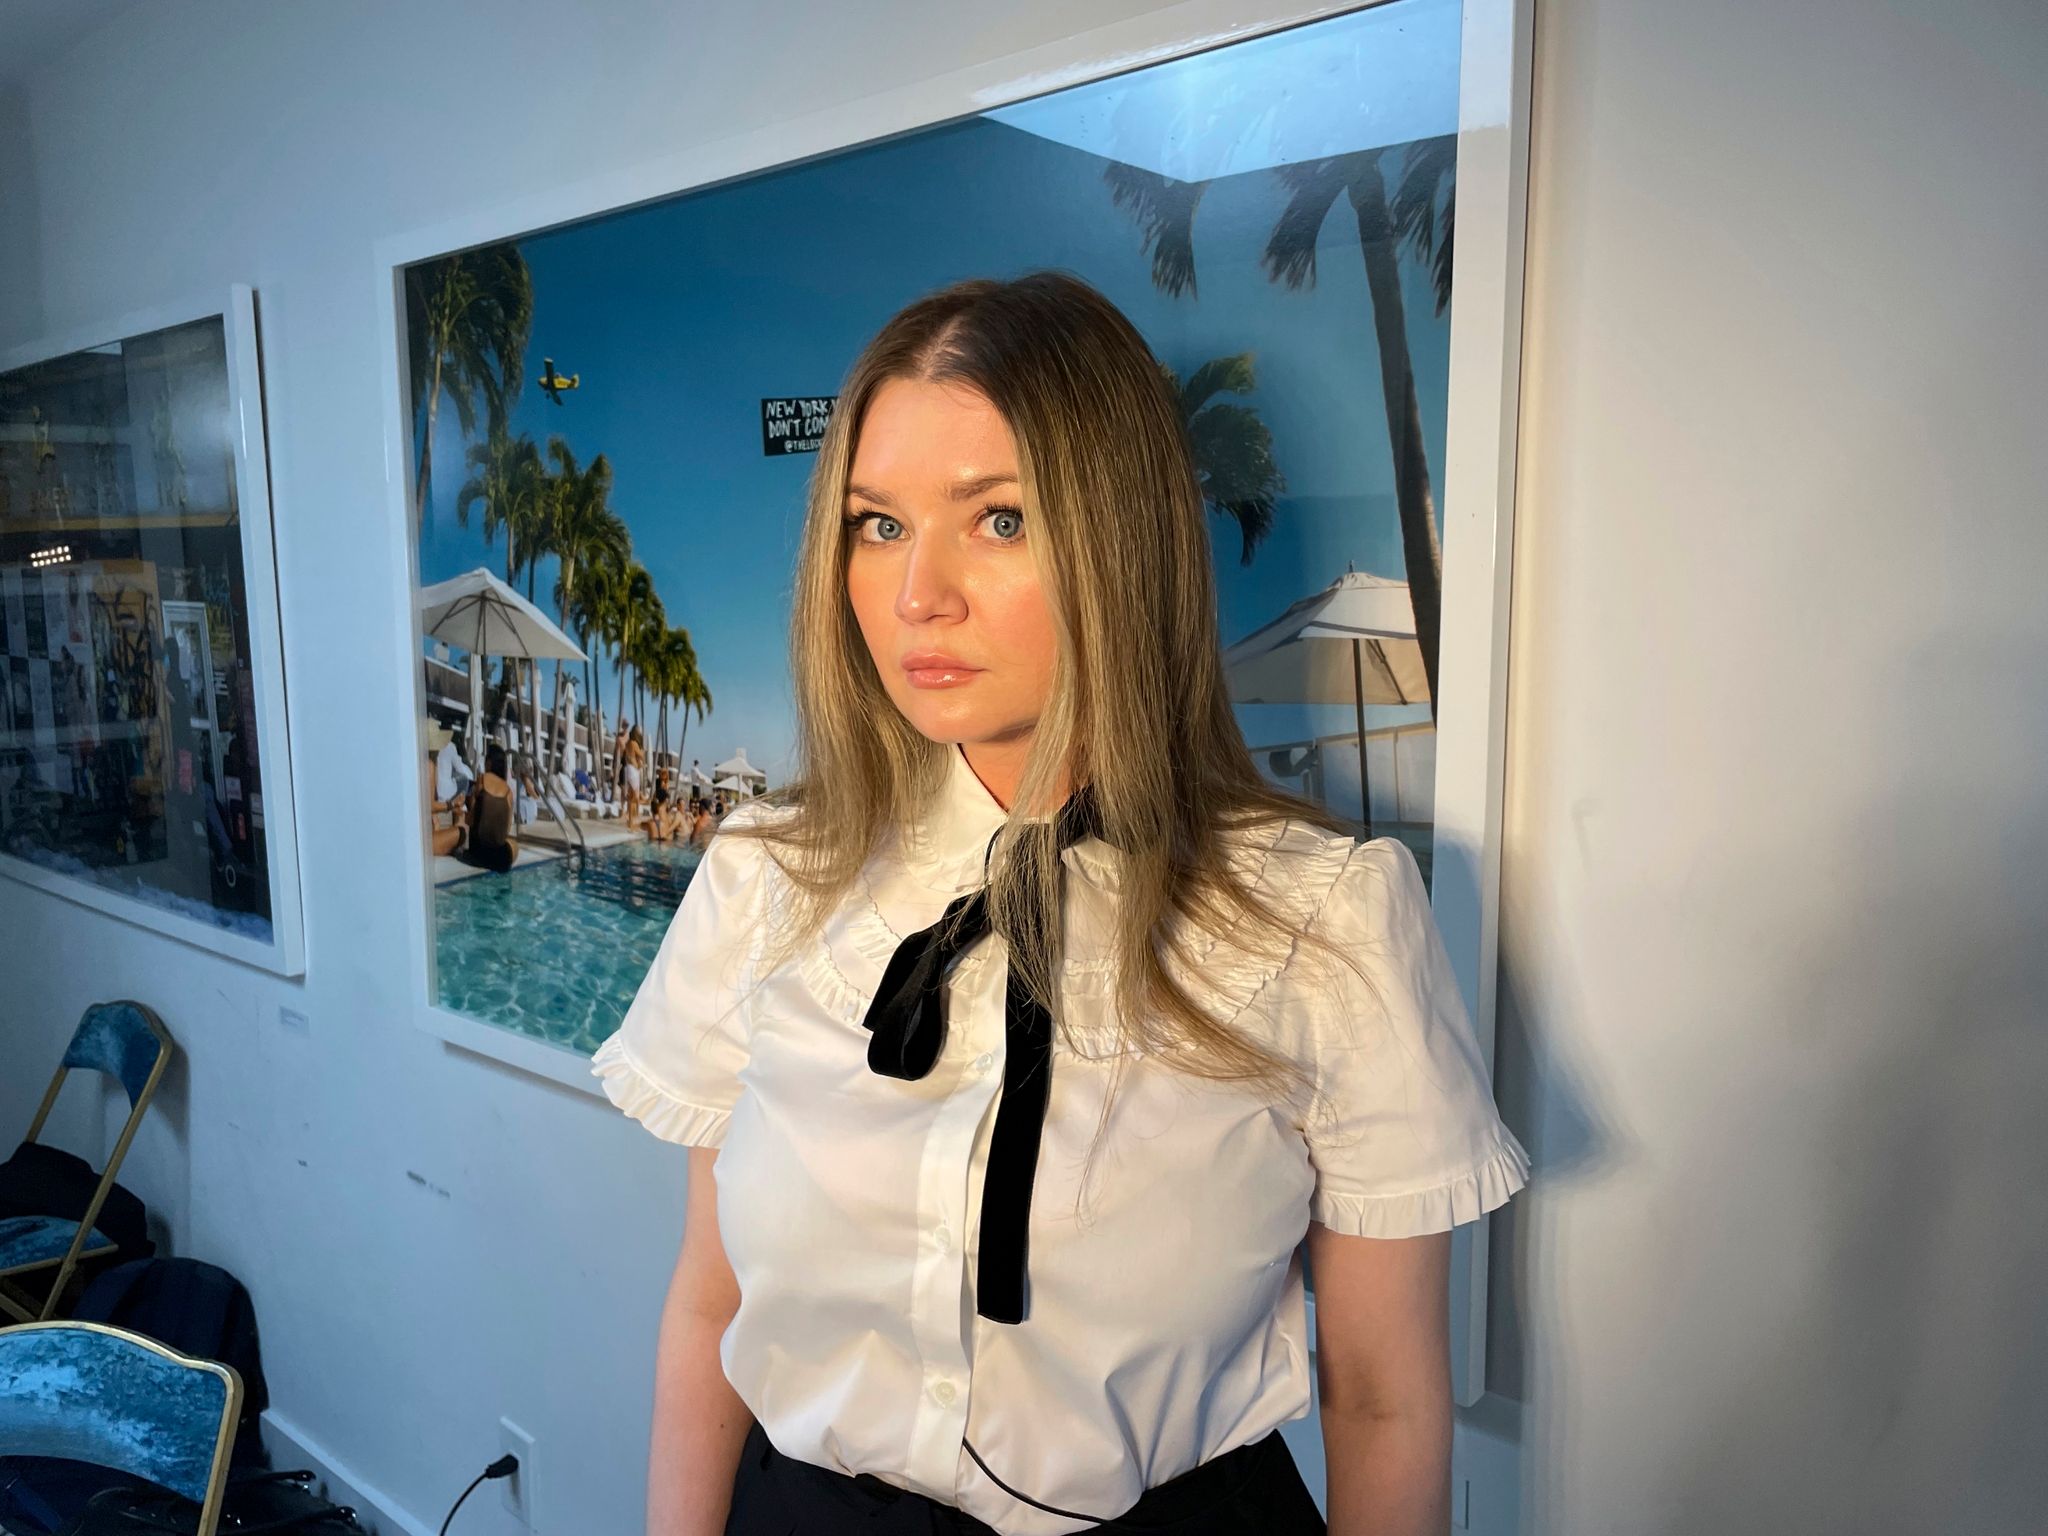 Die deutsche Hochstaplerin Anna Sorokin, auch bekannt als Anna Delvey, posiert in ihrer Wohnung in New York, um ihren Podcast «The Anna Delvey Show» zu bewerben.